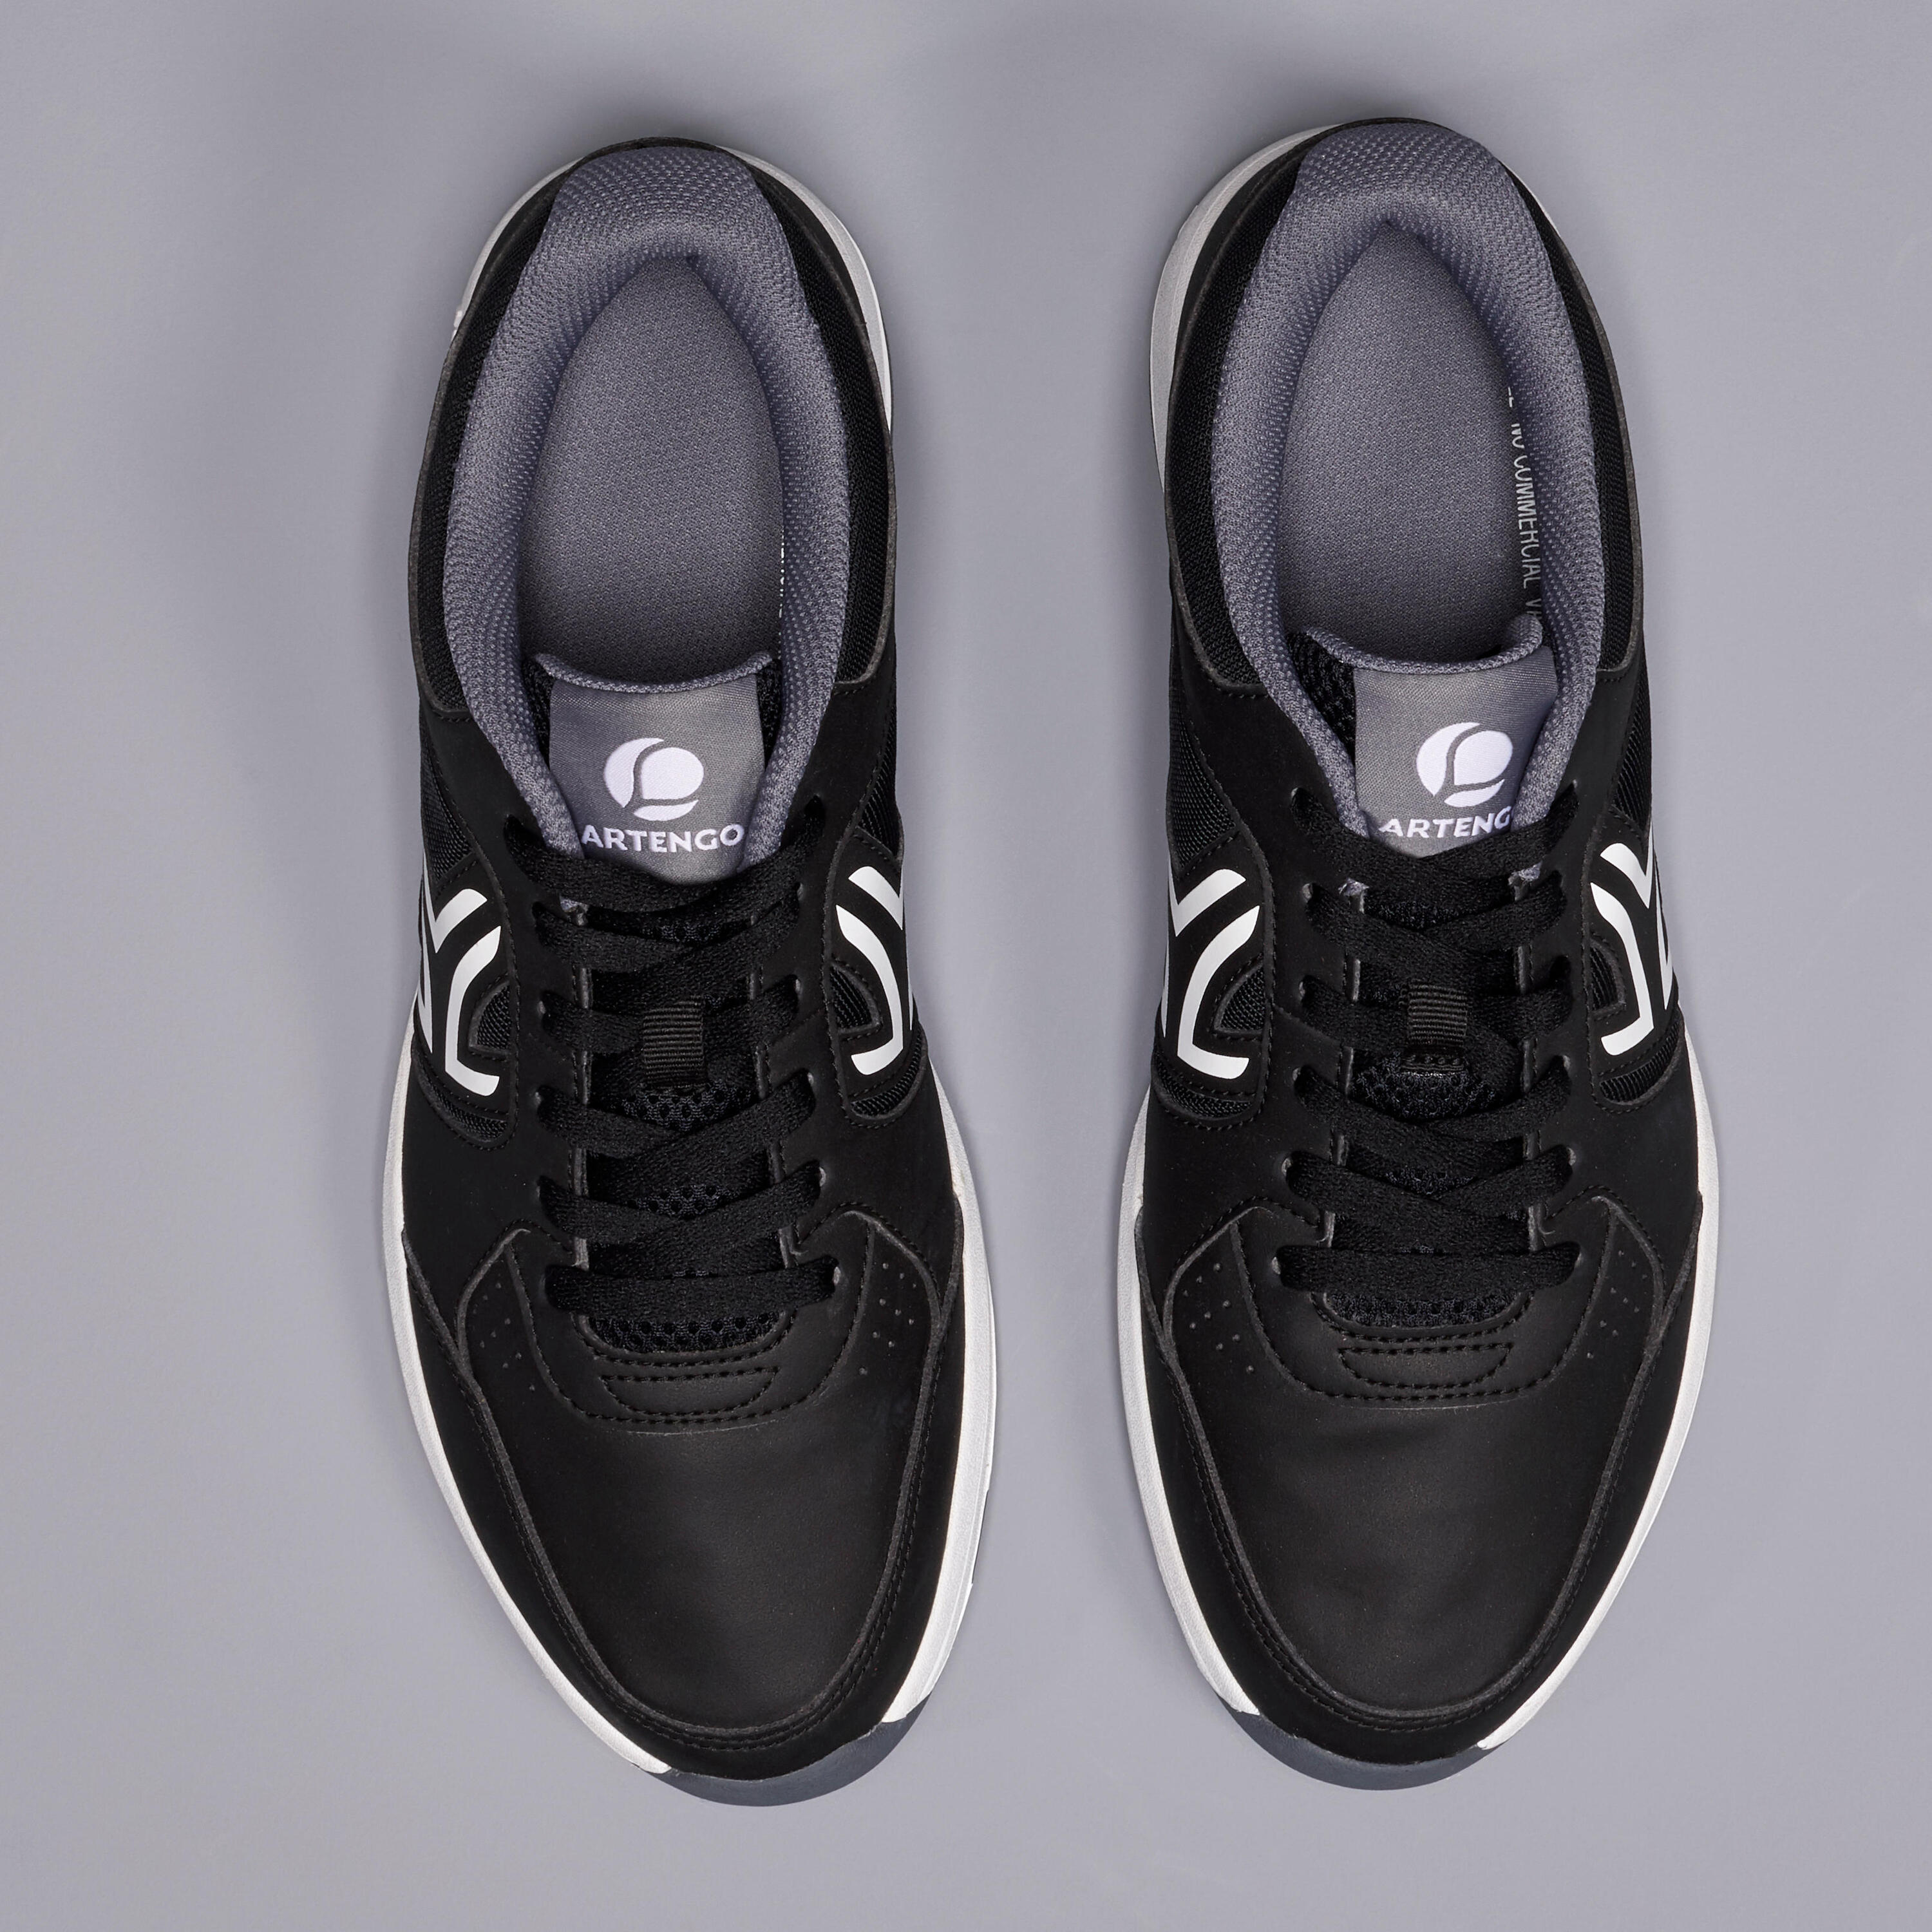 TS130 Multicourt Tennis Shoes - Black 8/9